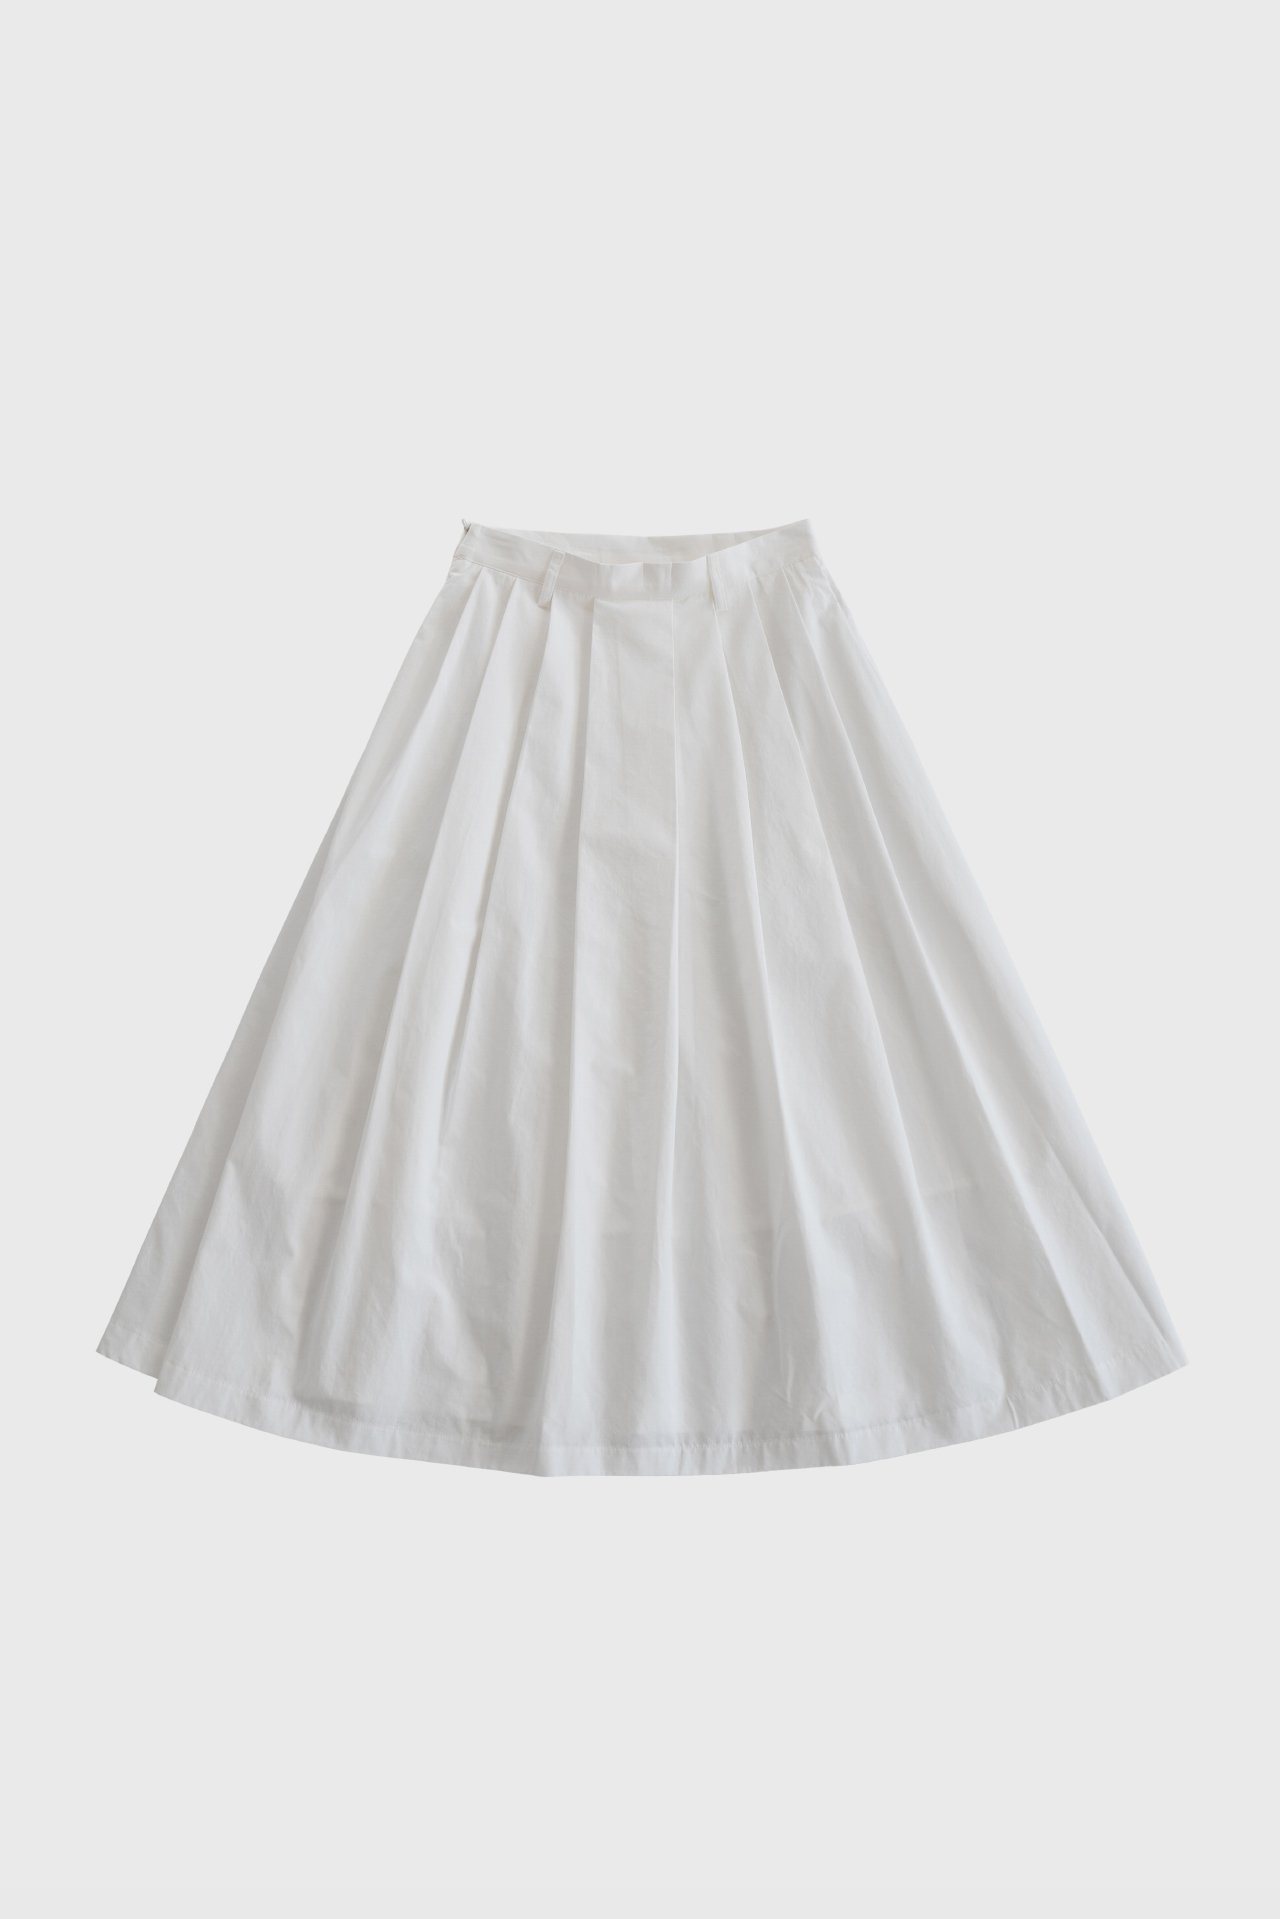 17518_Cotton Pleated skirt [주문일로부터 10일이내배송]